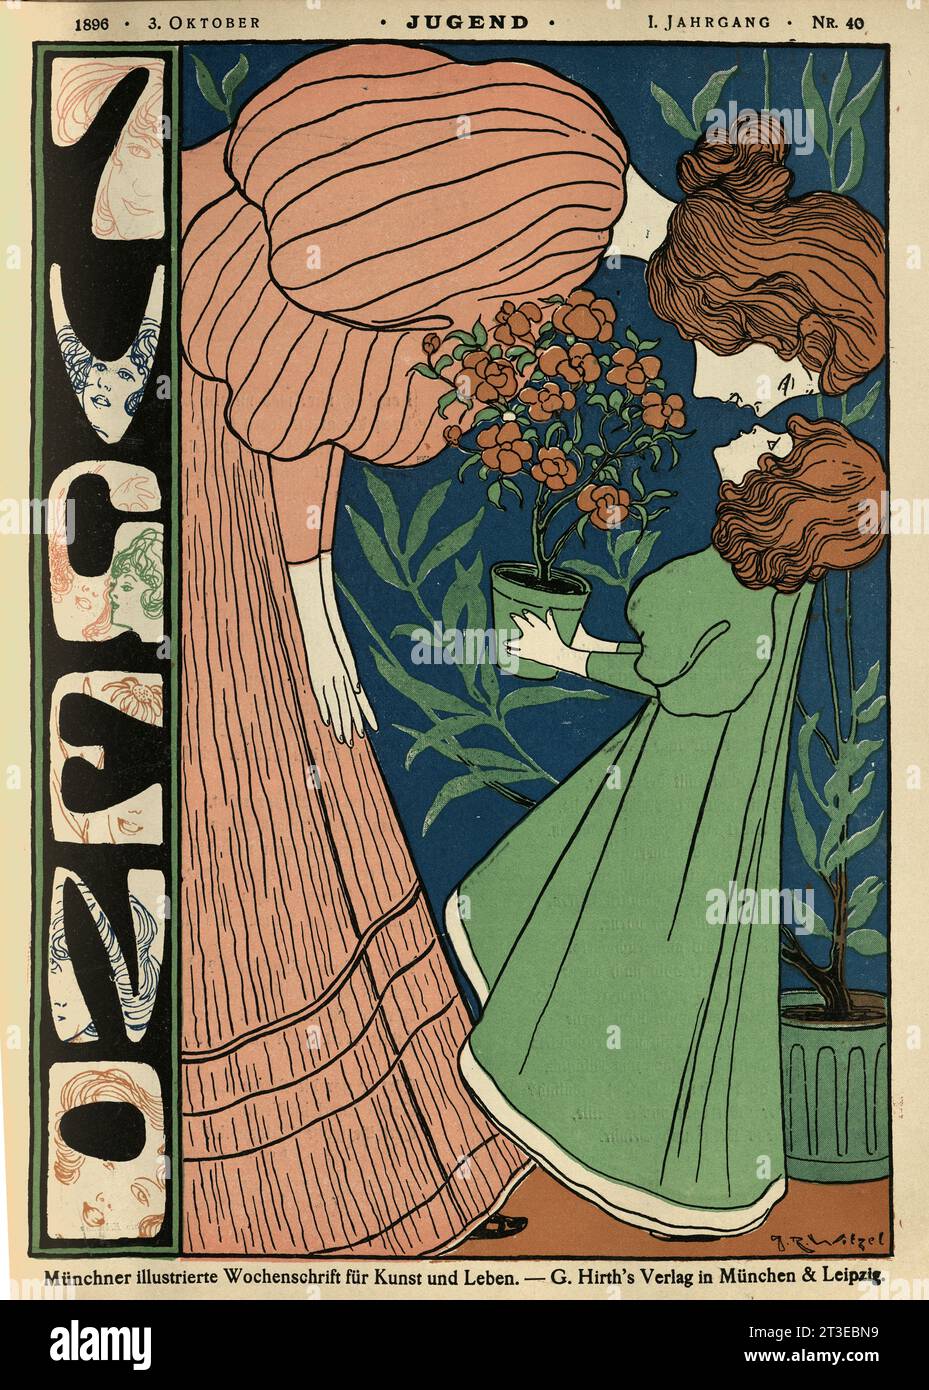 Couverture pour Jugend, mère et fille, Rose plante, Jugendstil, Art Nouveau., allemand années 1890 Banque D'Images